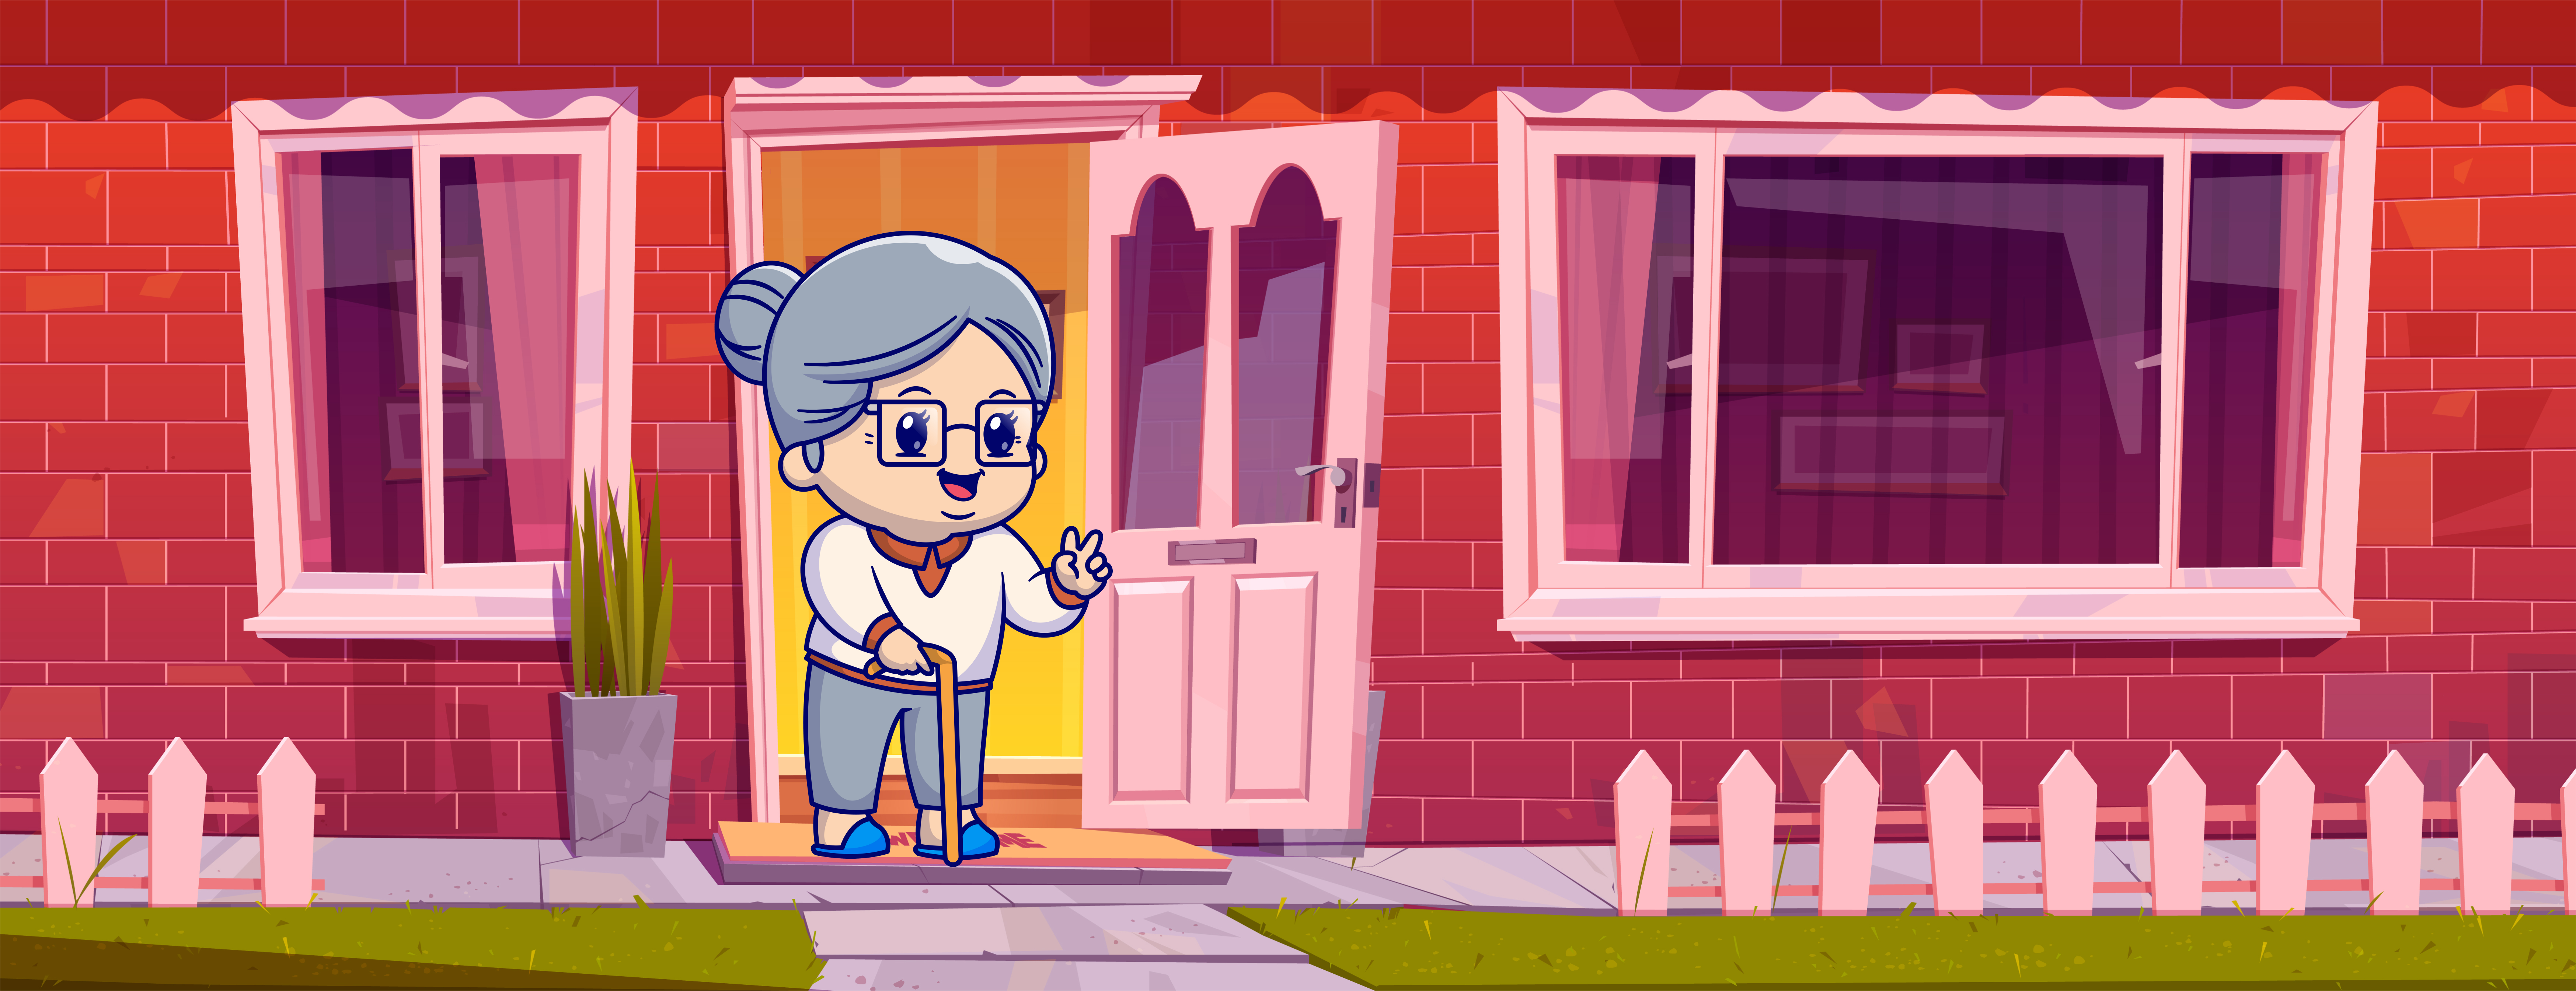 Abuela frente a la puerta de su casa